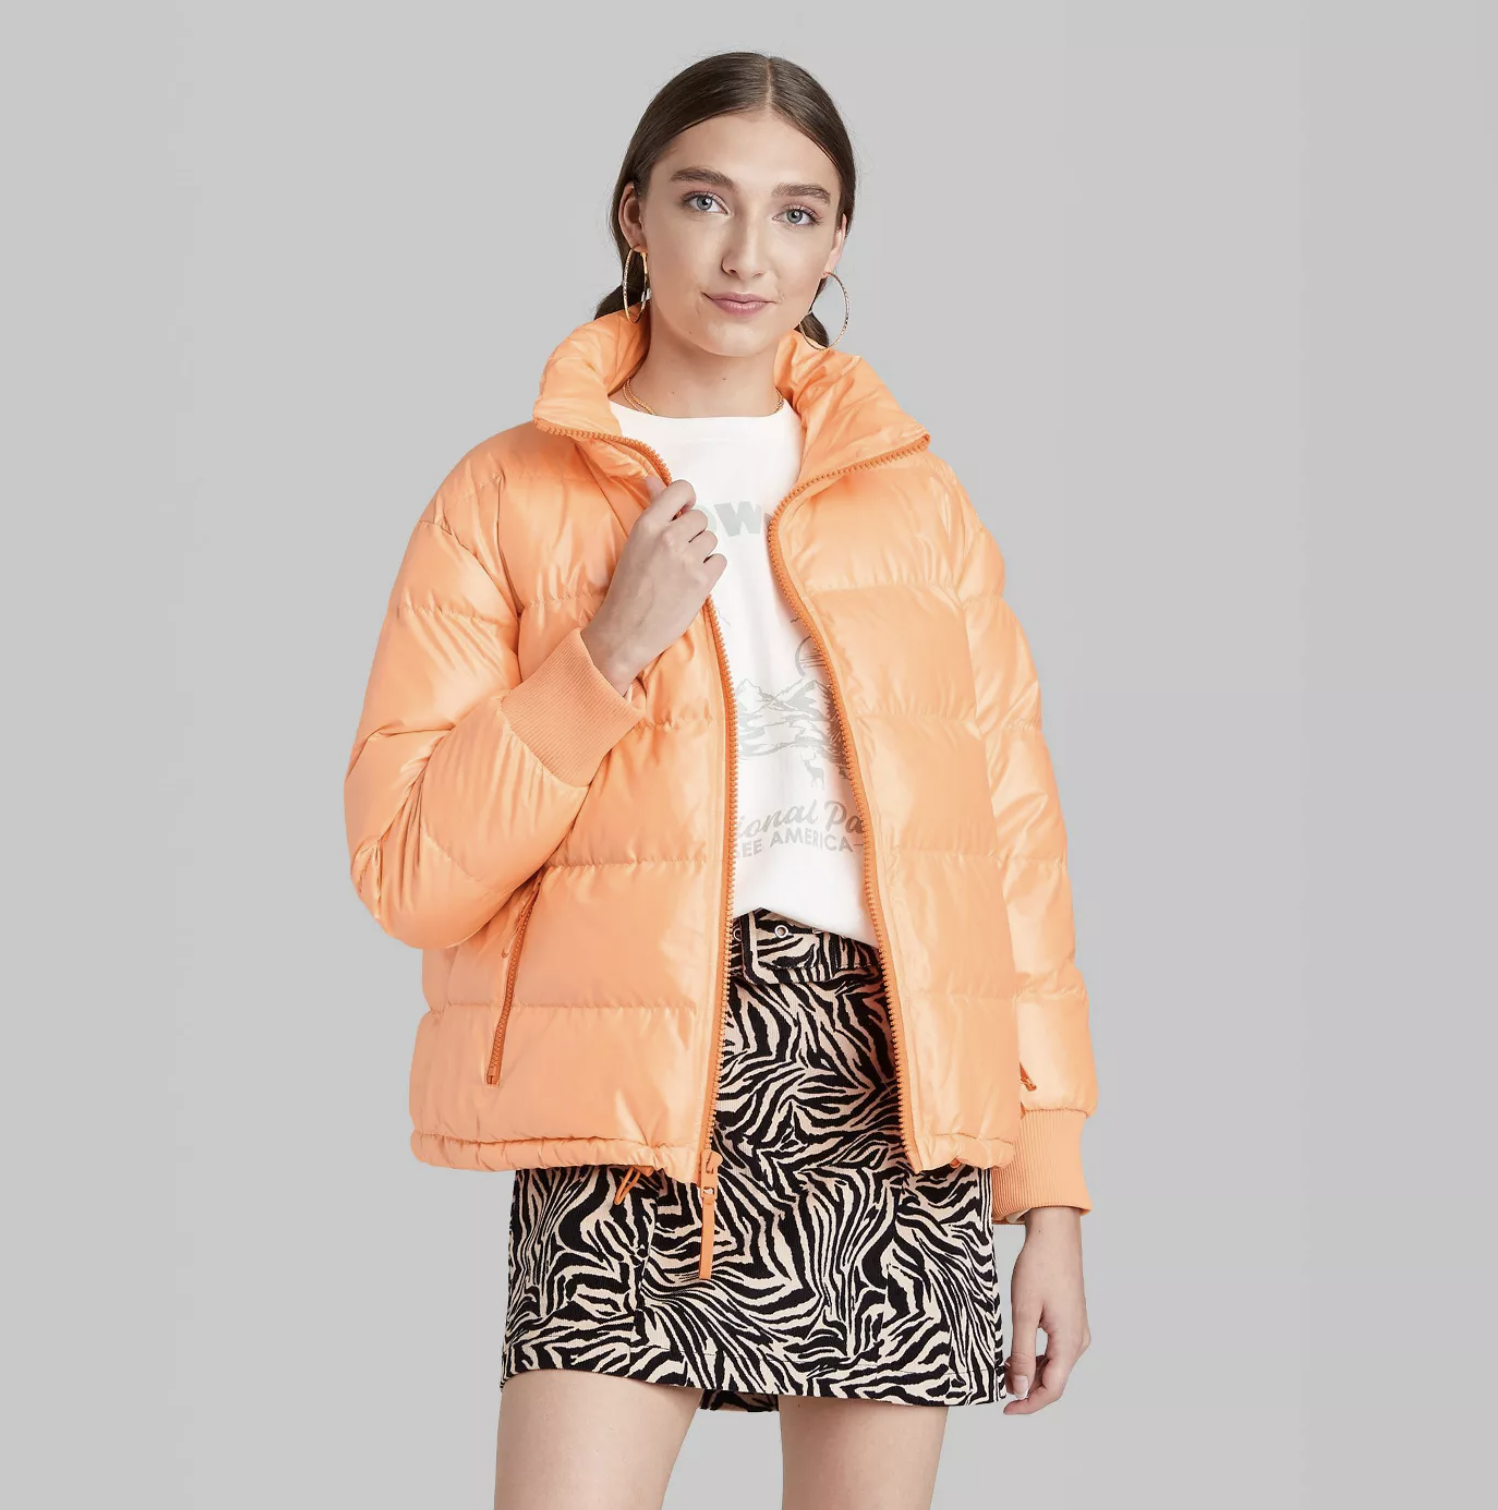 model wearing the puffer jacket in orange